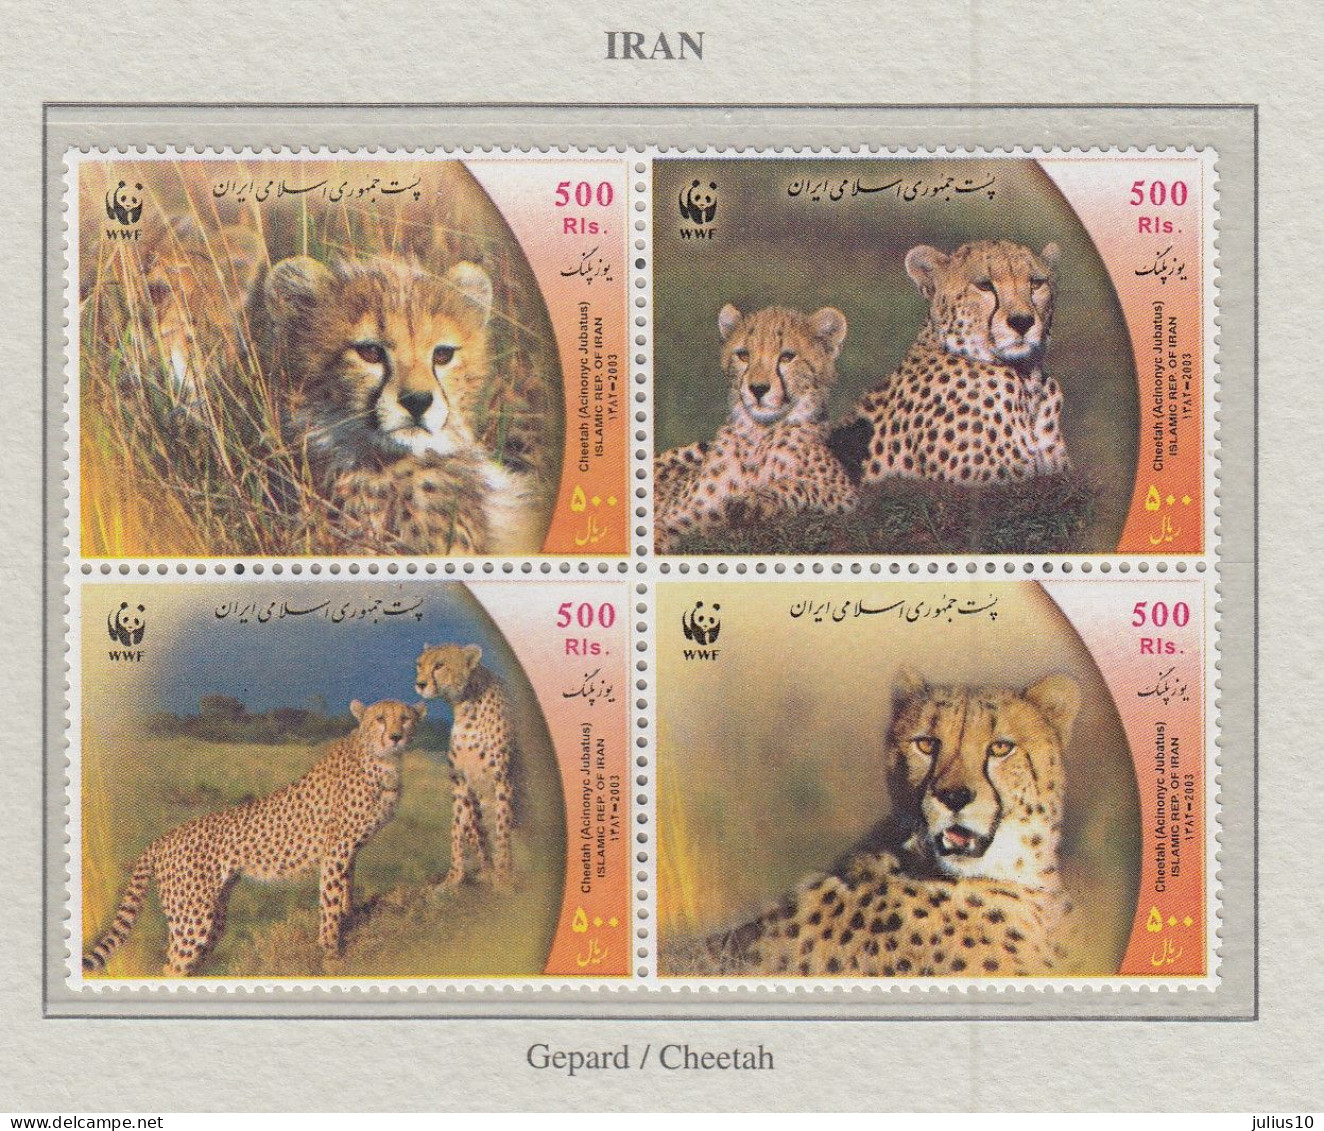 IRAN 2003 WWF Wild Cats Mi 2932-2935 MNH Fauna 676 - Félins